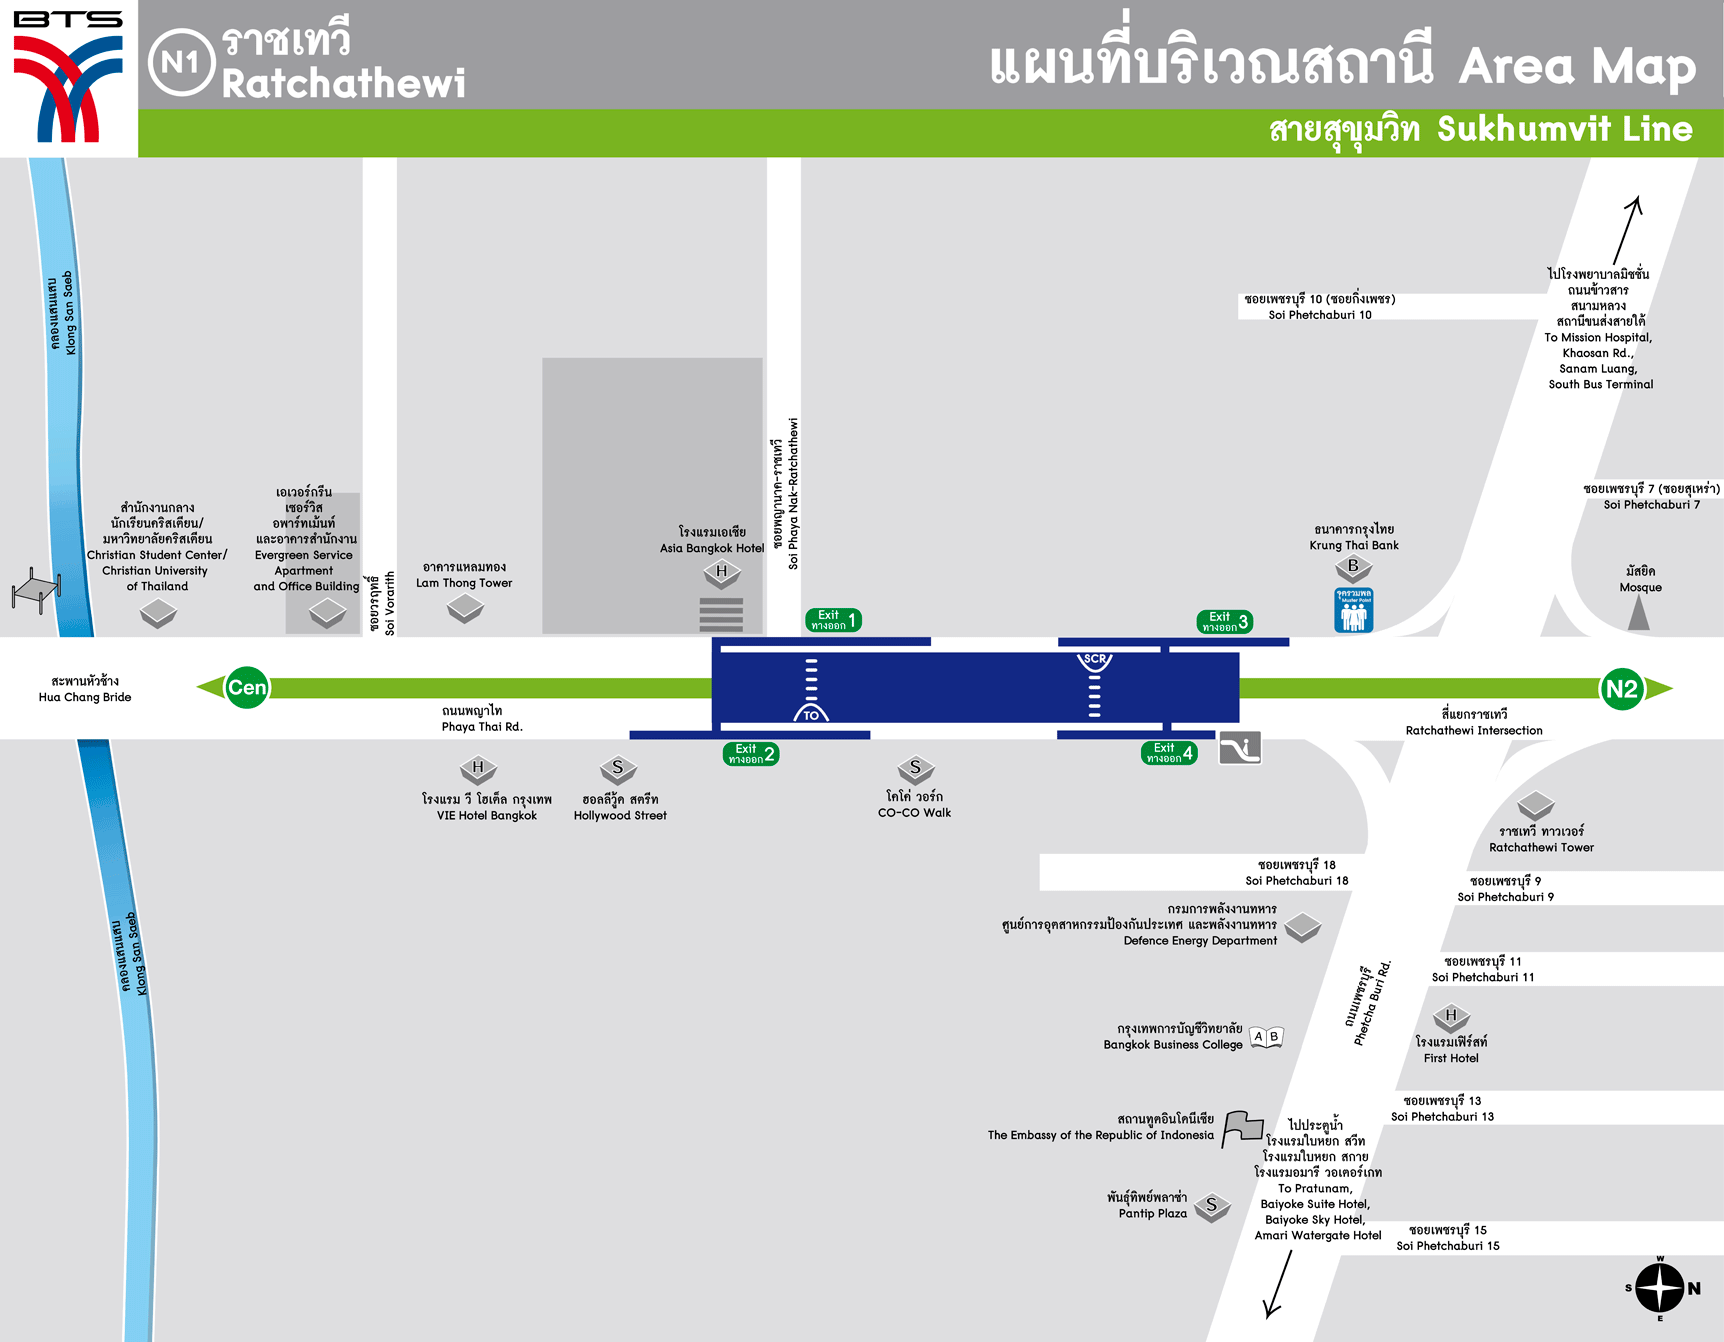 Trạm skytrain Ratchathewi Thái Lan - BTS N1